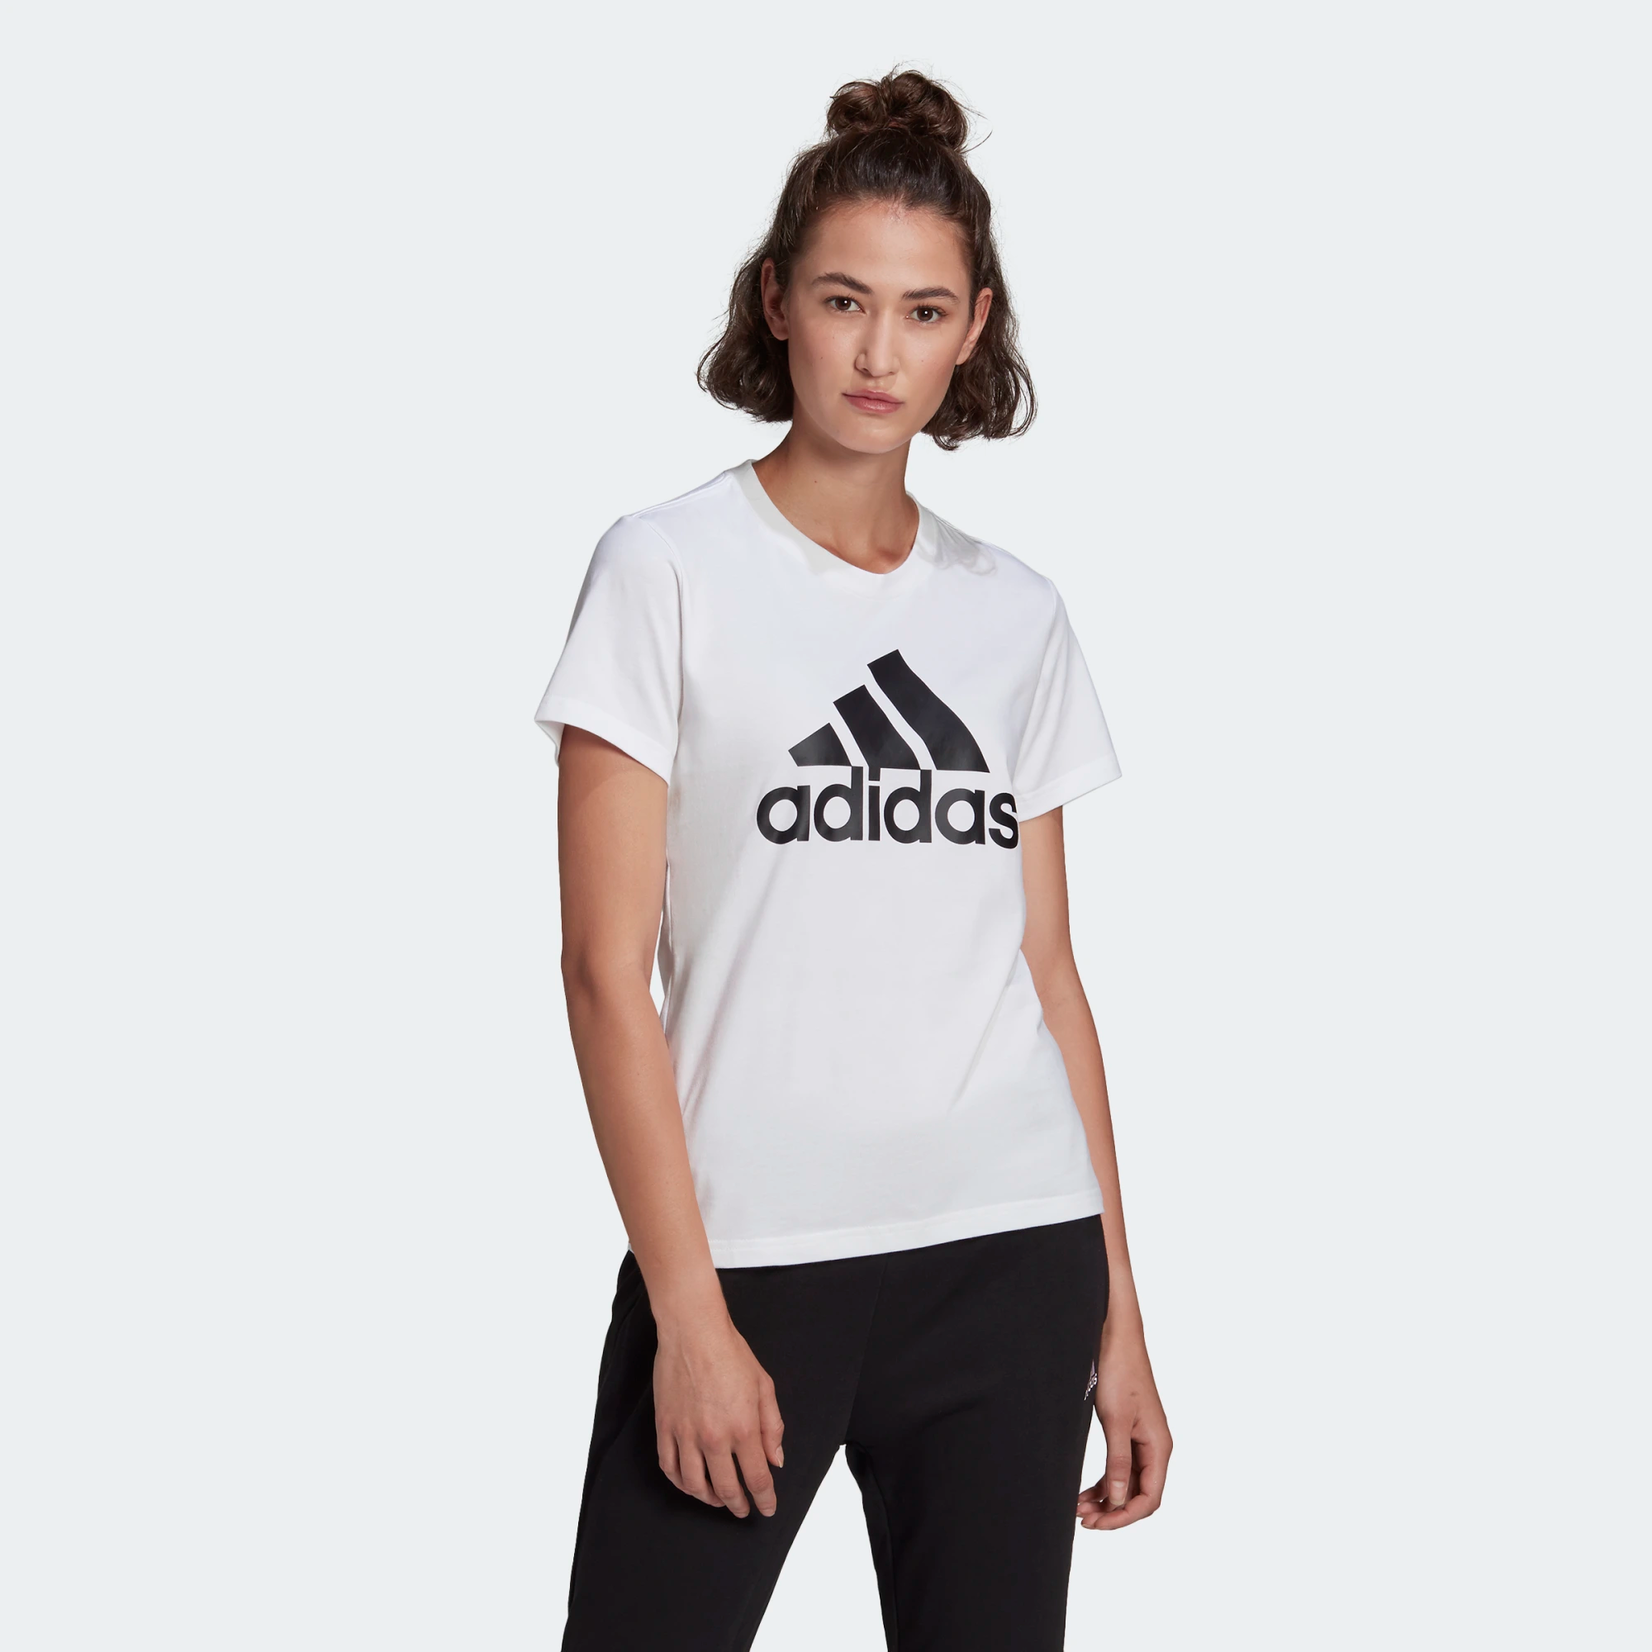 Adidas Adidas T-Shirt, Loungewear Essentials Logo, Ladies